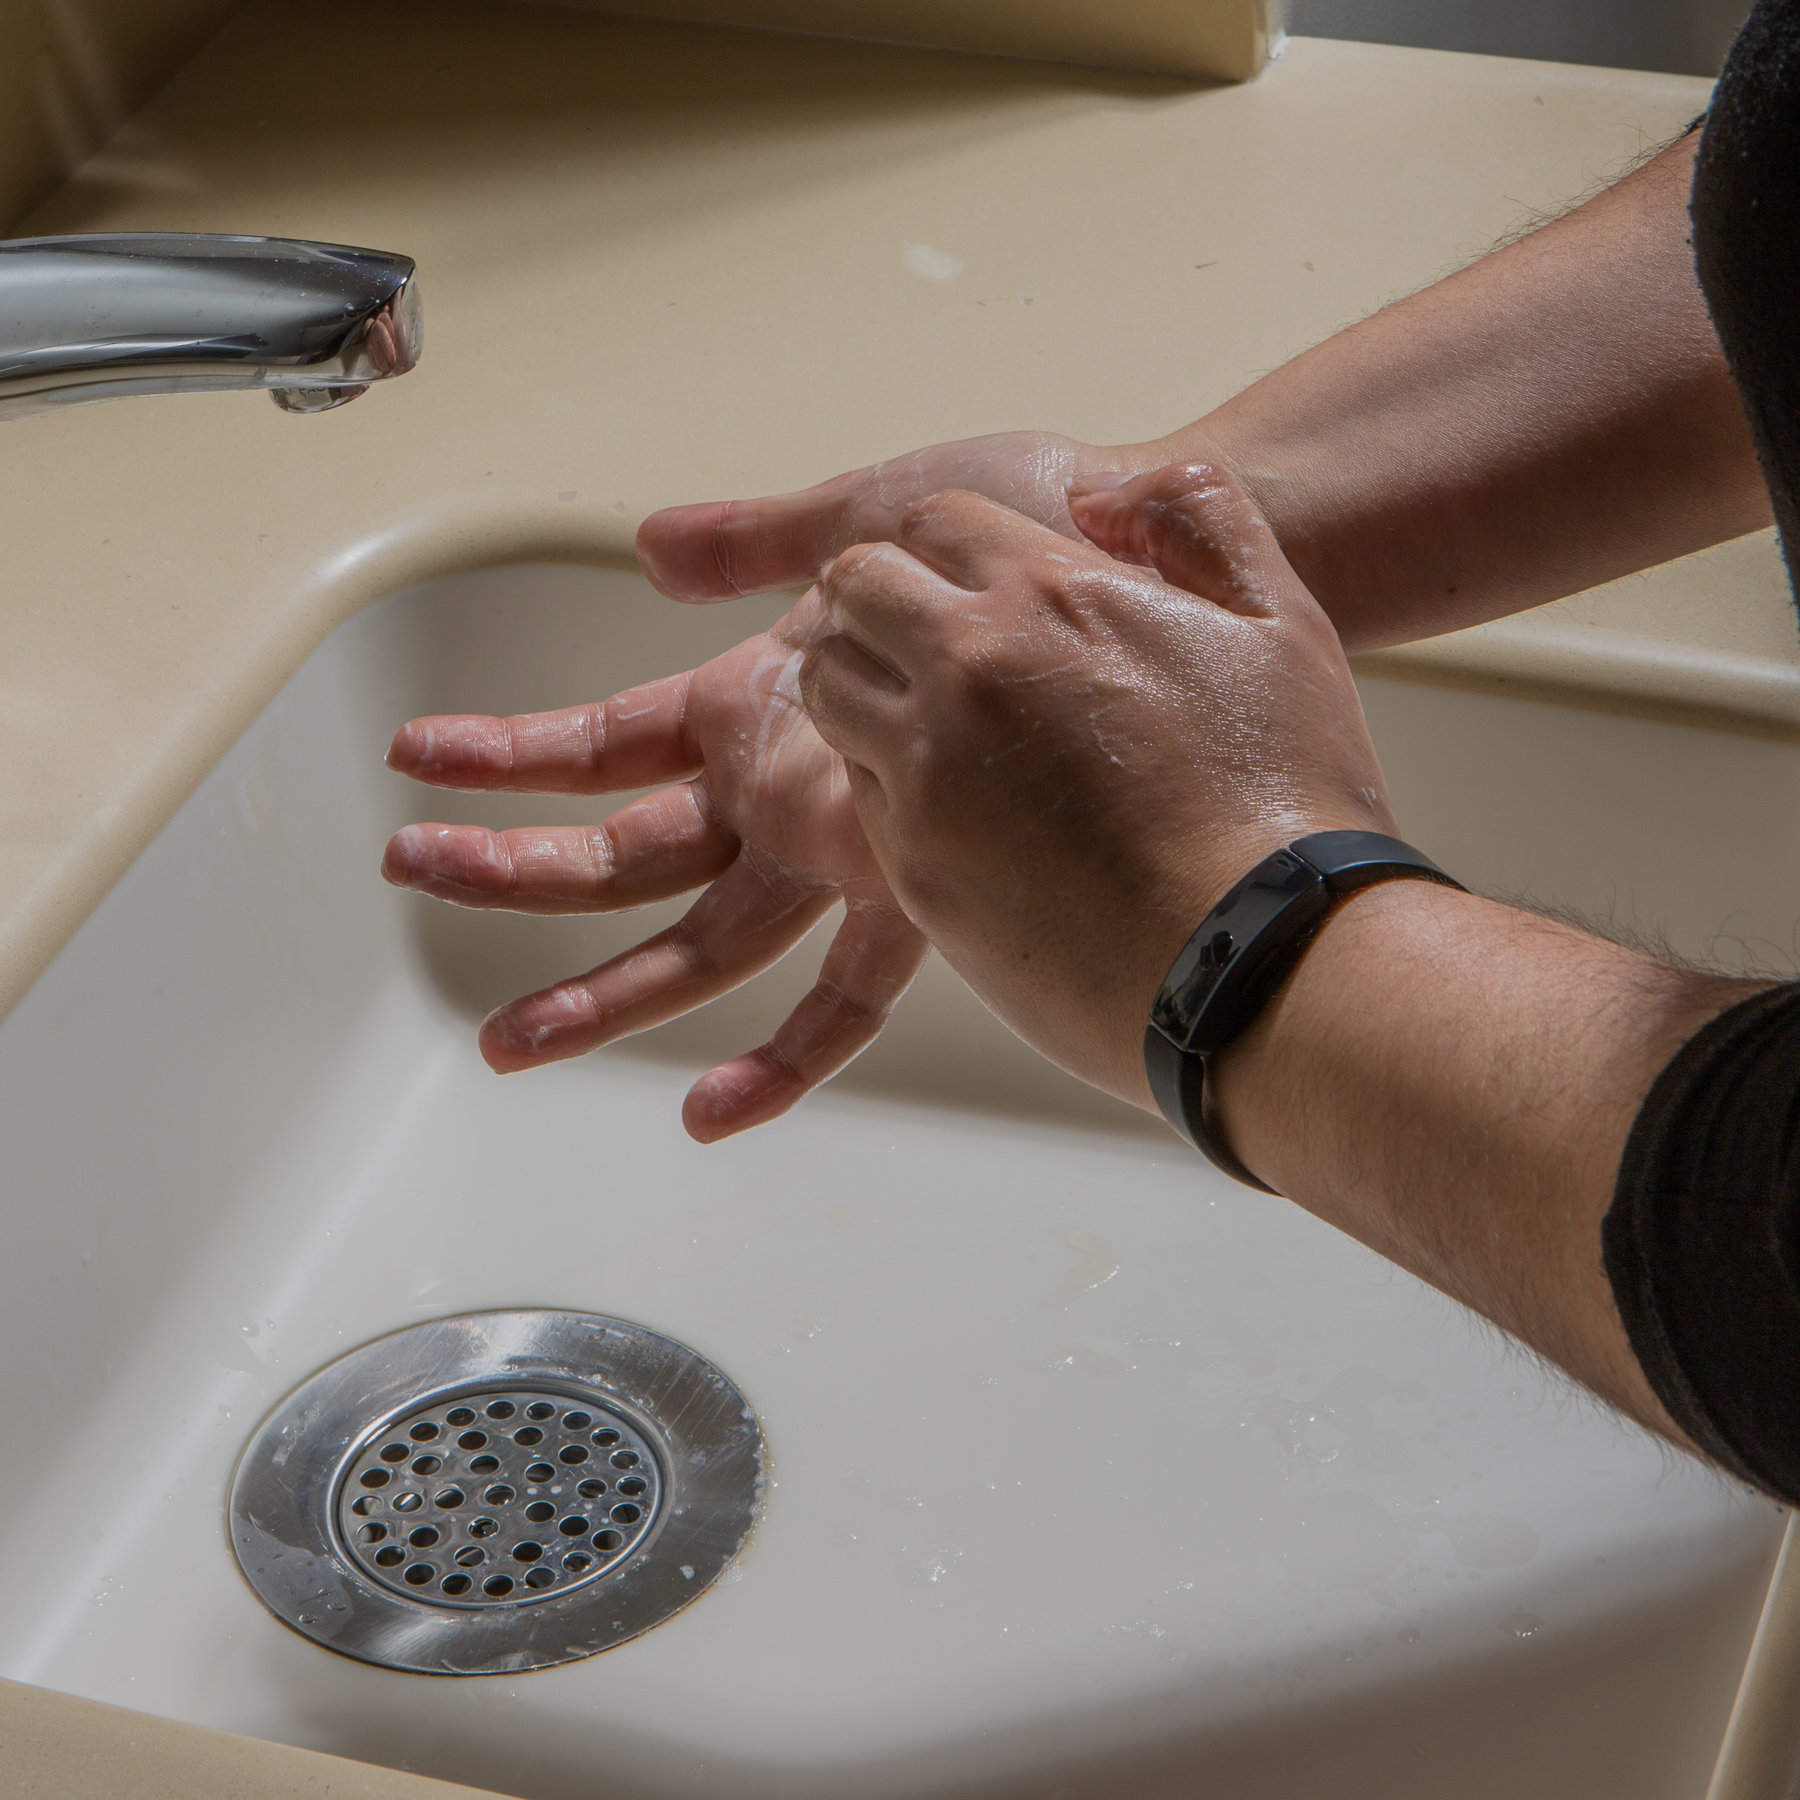 Lavado de manos elimina más de la mitad de las bacterias y virus